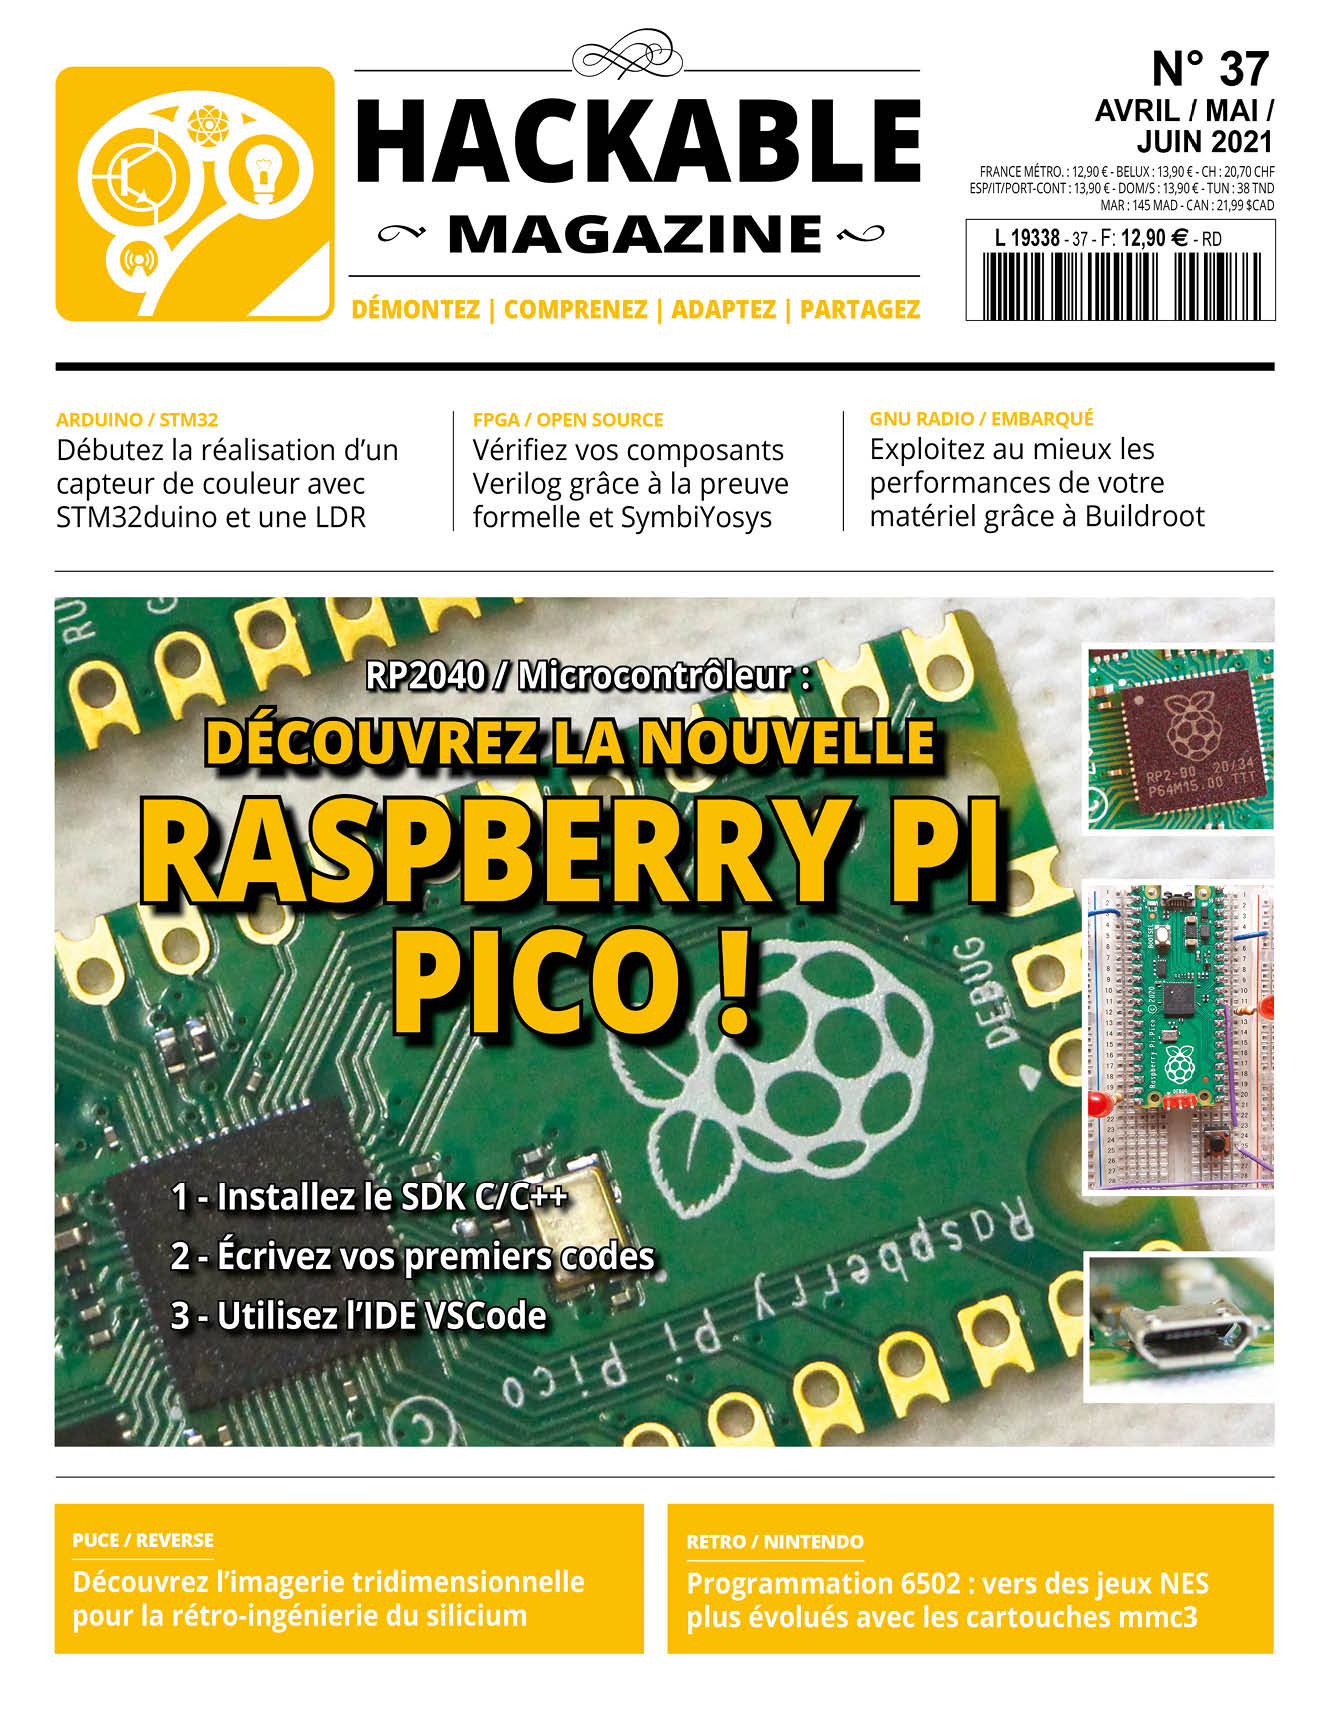 Découvrez la nouvelle Raspberry Pi Pico !